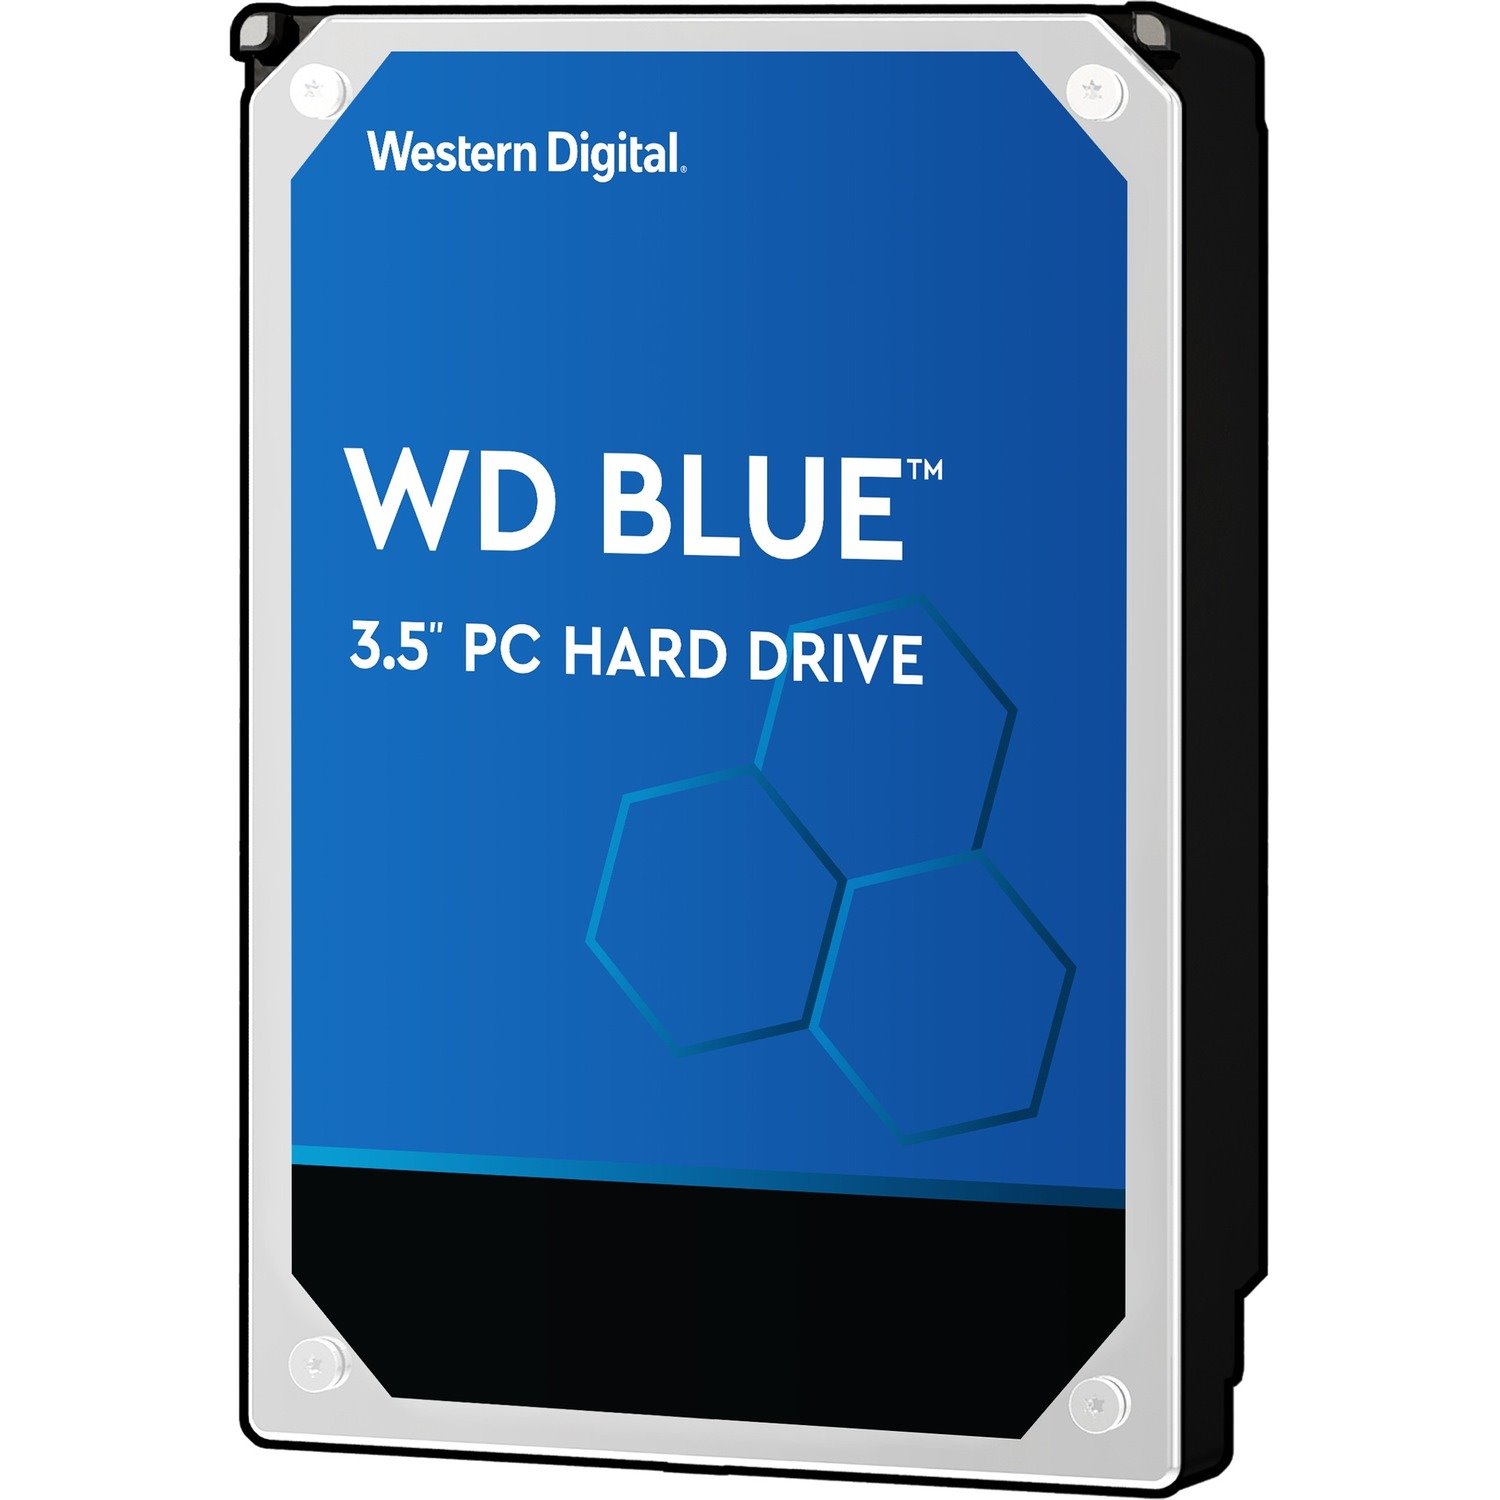 Western Digital Blue WD5000AZLX 500 GB Hard Drive - 3.5" Internal - SATA (SATA/600)